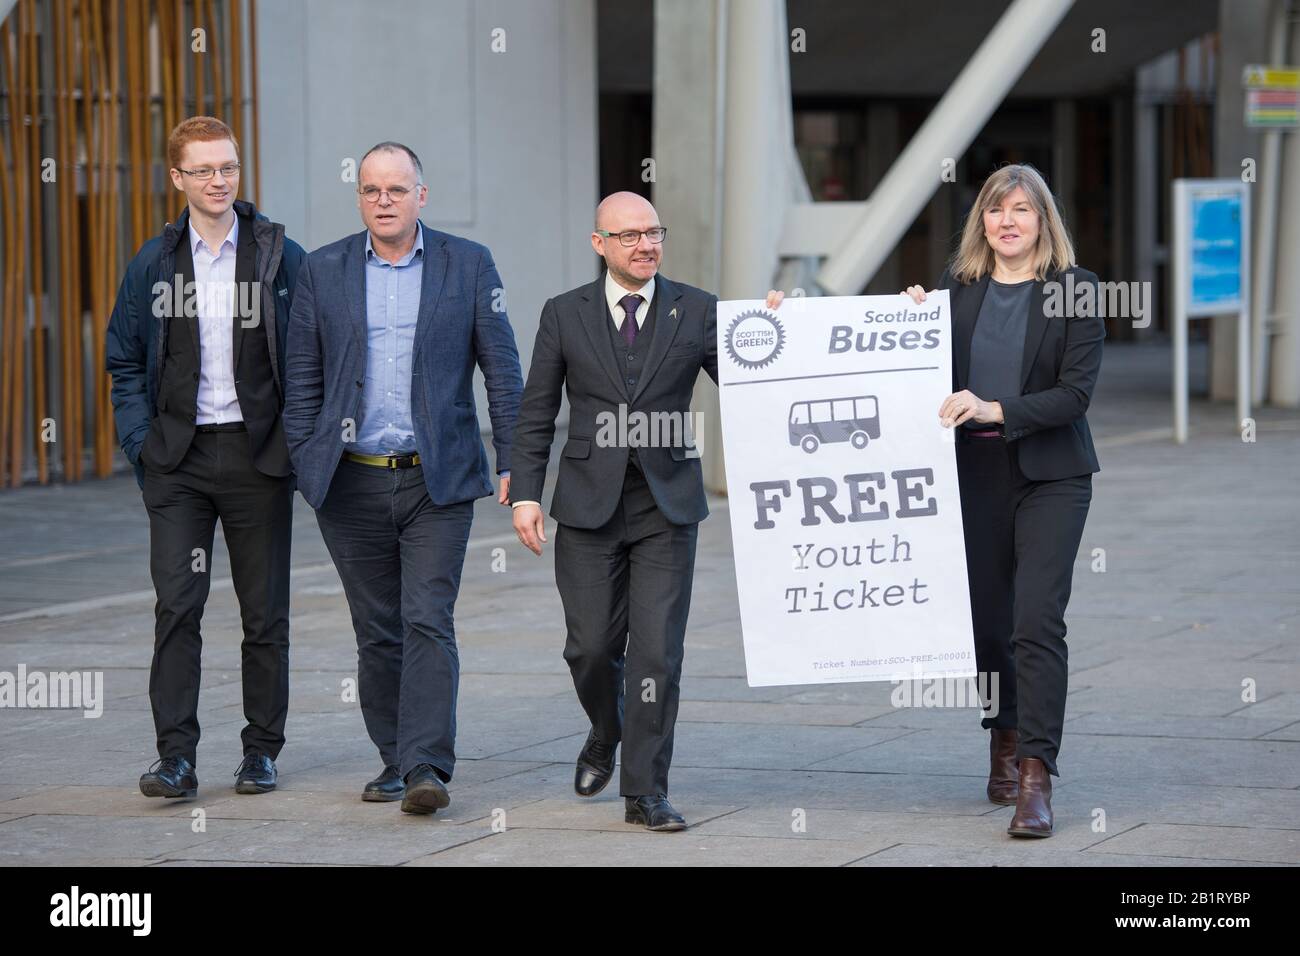 Edimburgo, Regno Unito. 27 Febbraio 2020. Nella foto: (L-R) Ross Greer MSP; Andy Wightman MSP; Patrick Harvie MSP; Alison Johnstone MSP. In vista del dibattito sul bilancio di questo pomeriggio, i Co-Leader del Parlamento dei Verdi scozzesi, Alison Johnstone MSP e Patrick Harvie MSP insieme al gruppo Green MSP, faranno tappa a una fotocellula al di fuori del Parlamento scozzese per celebrare il loro viaggio gratuito in autobus per la vittoria di bilancio di meno di 19s. Ieri i Verdi scozzesi hanno annunciato che era stato raggiunto un accordo sul libero viaggio in autobus, più denaro per i consigli, più risorse per la sicurezza comunitaria e un pacchetto aggiuntivo di 45 milioni di £da affrontare Foto Stock